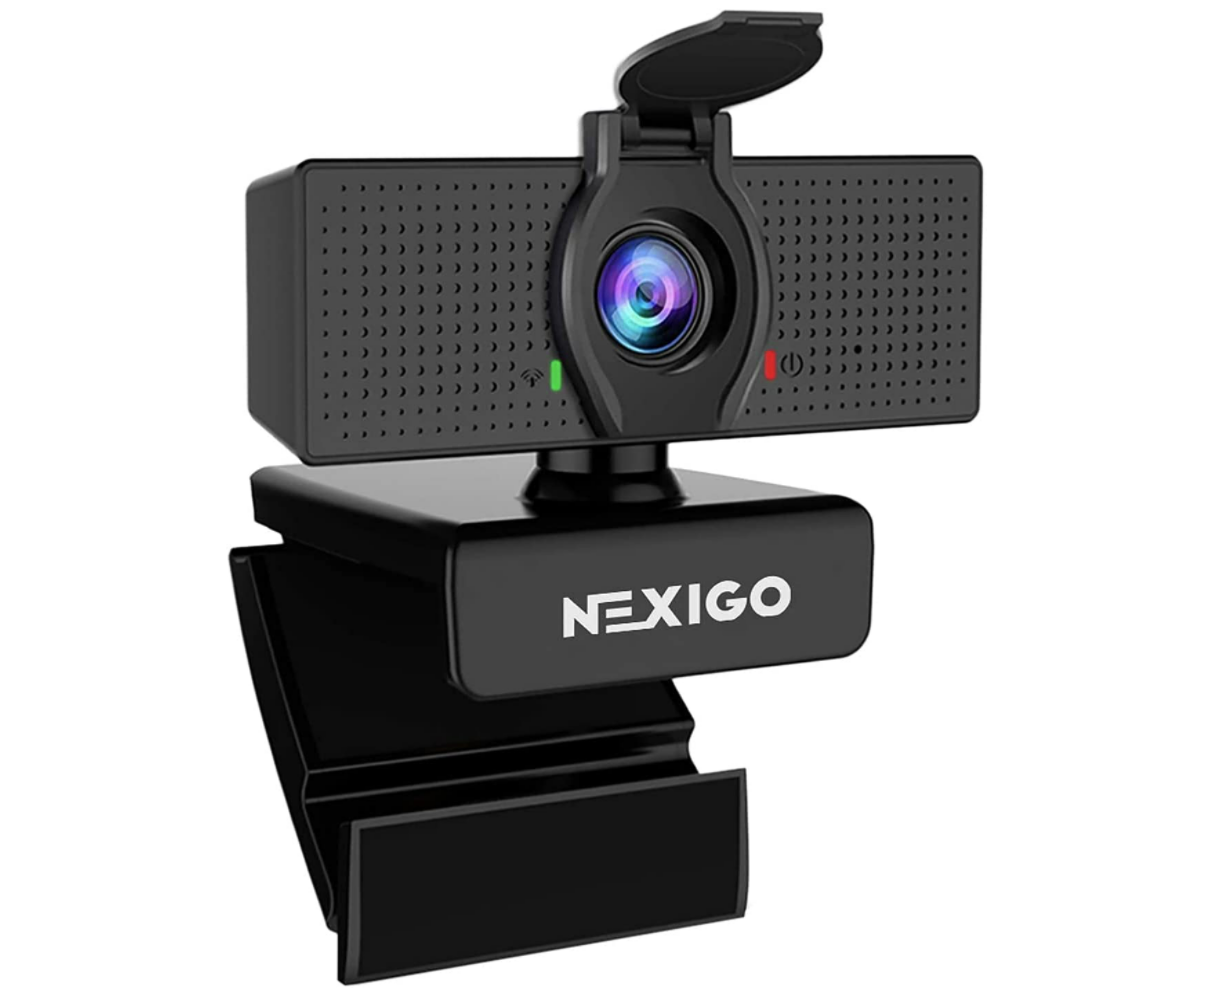 Nexigo N60 - Best budget webcam runner-up